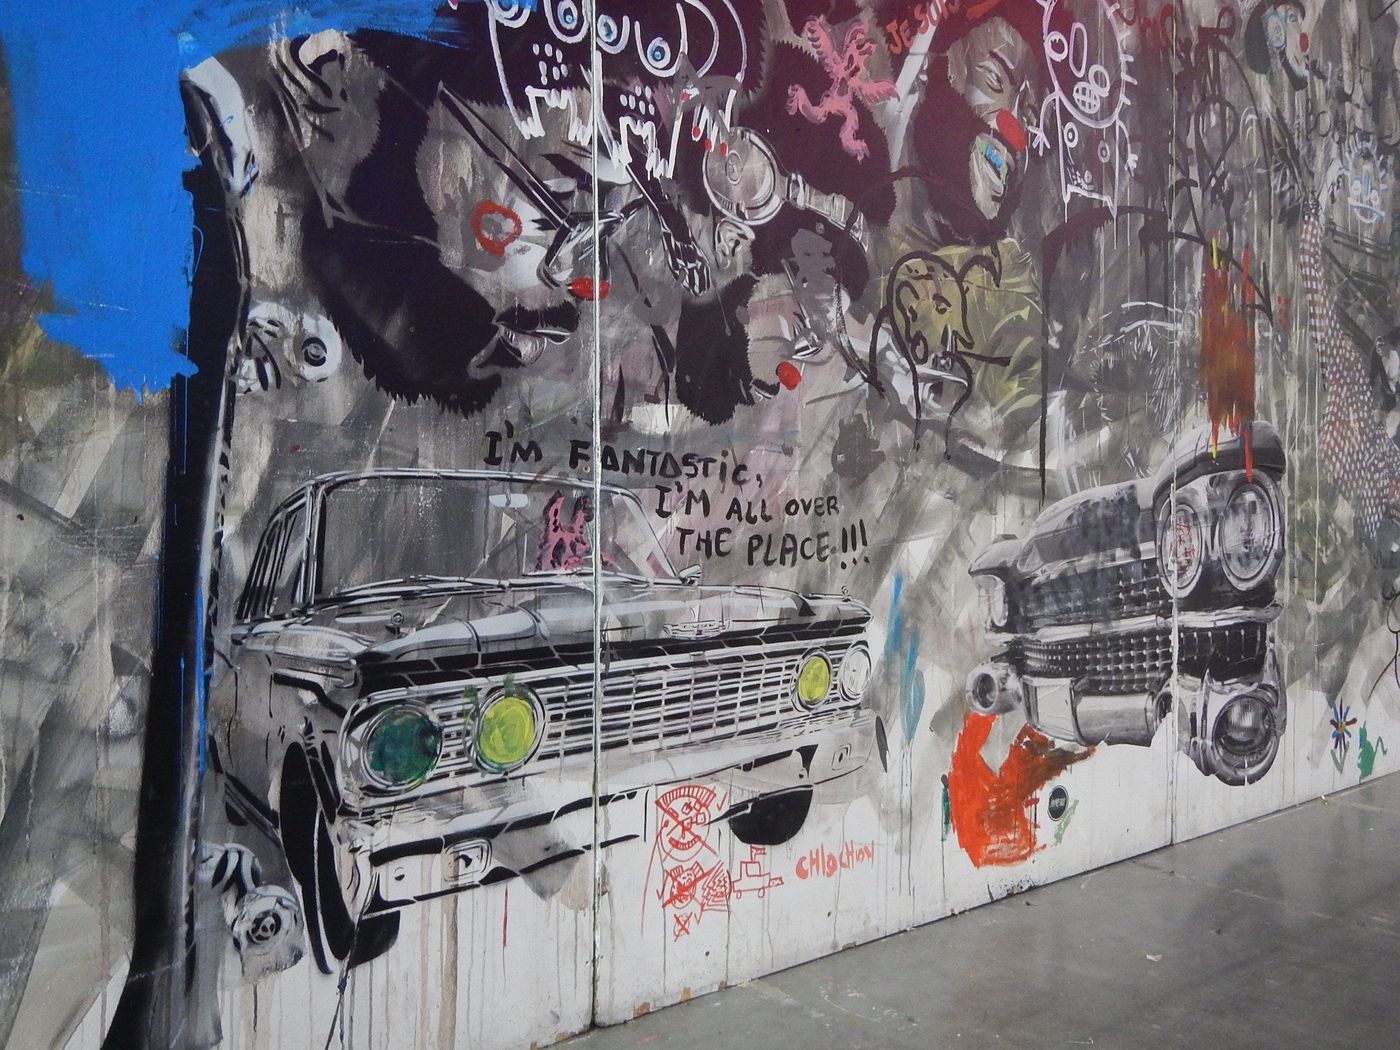 Tags et graffitis à la Braderie de l'Art